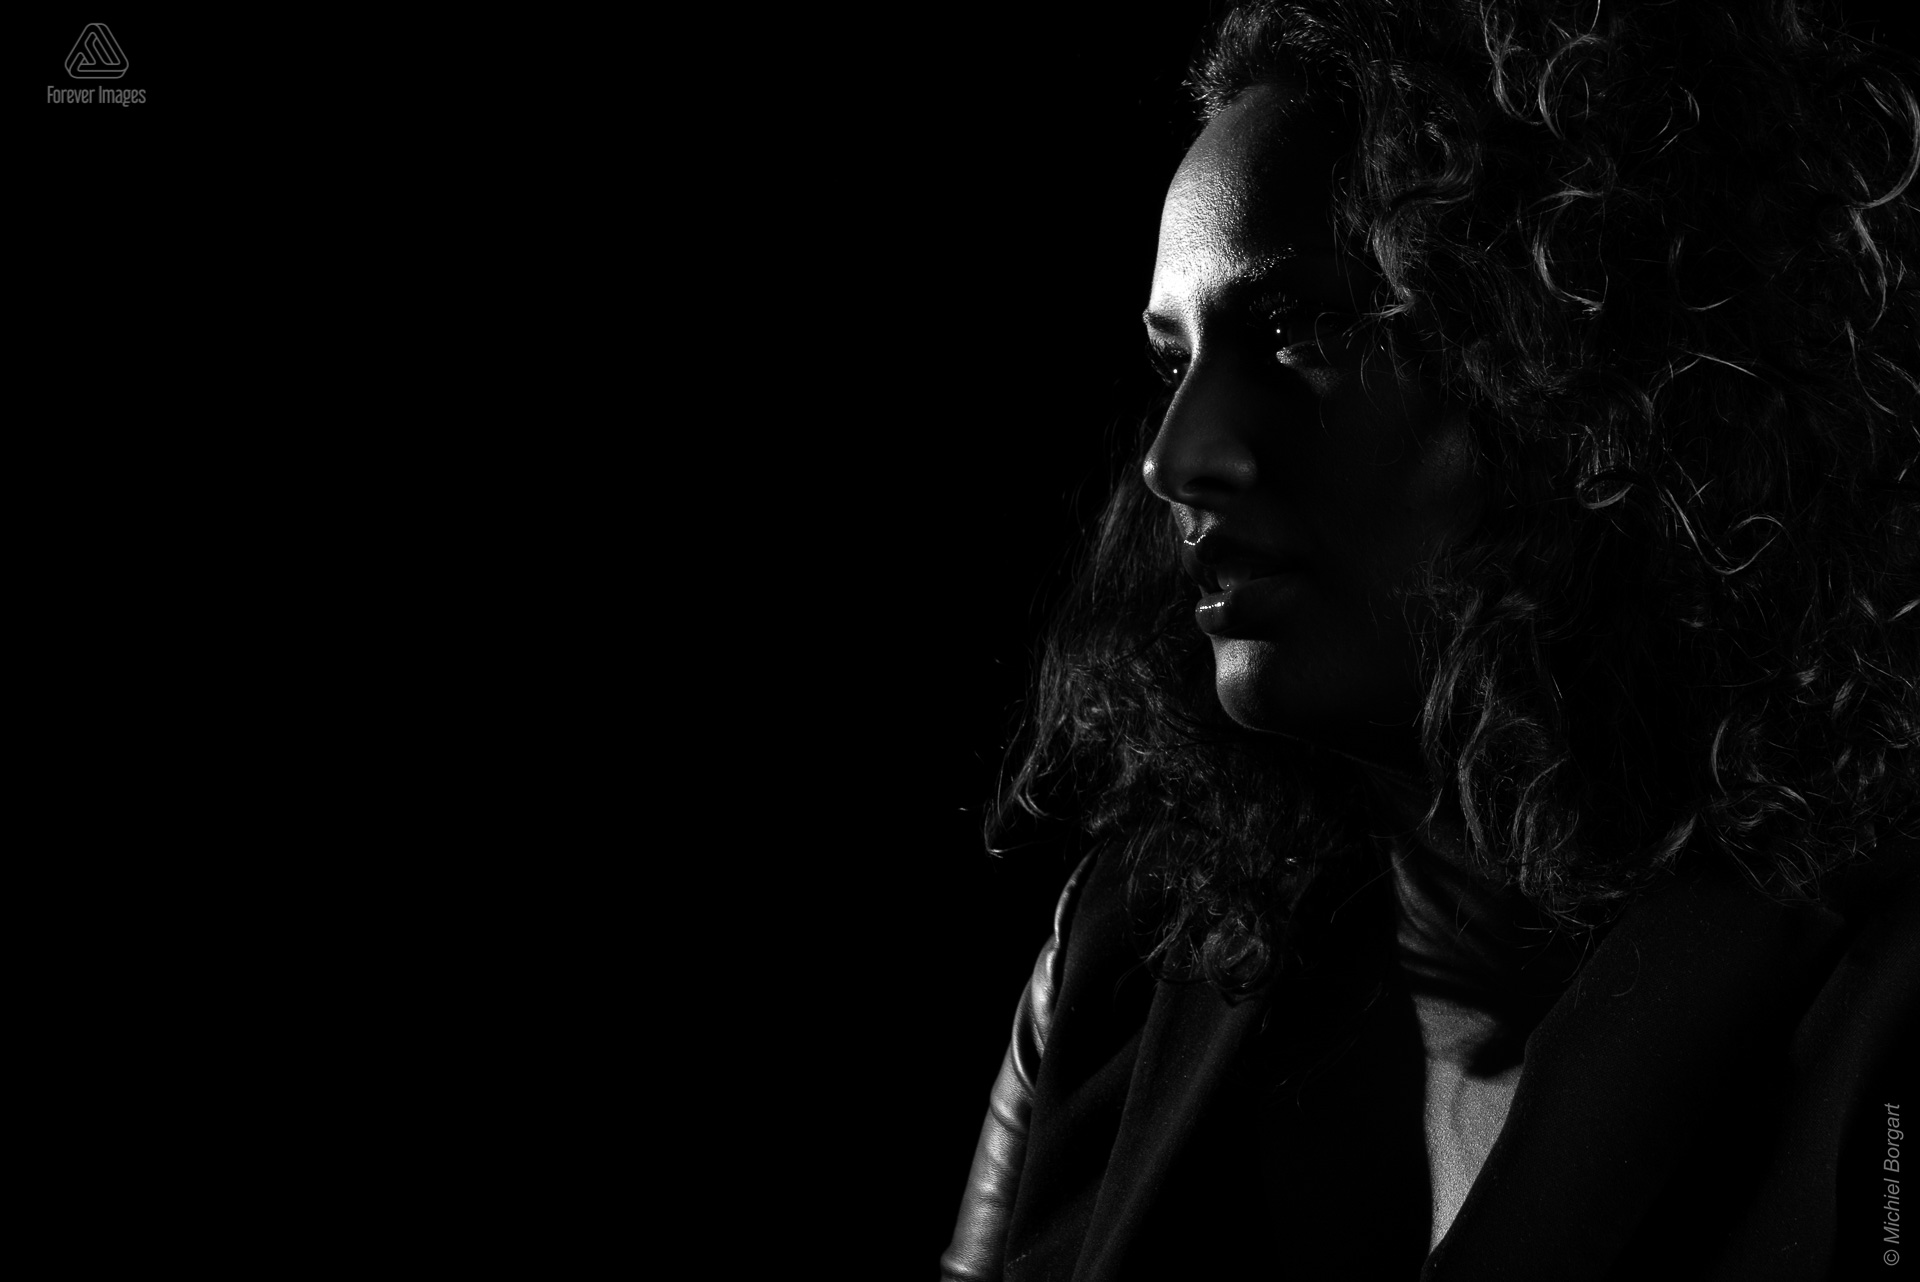 Portretfoto zwart-wit low key film noir studio mooie jonge dame kijkend naar opzij | Jessica | Portretfotograaf Michiel Borgart - Forever Images.